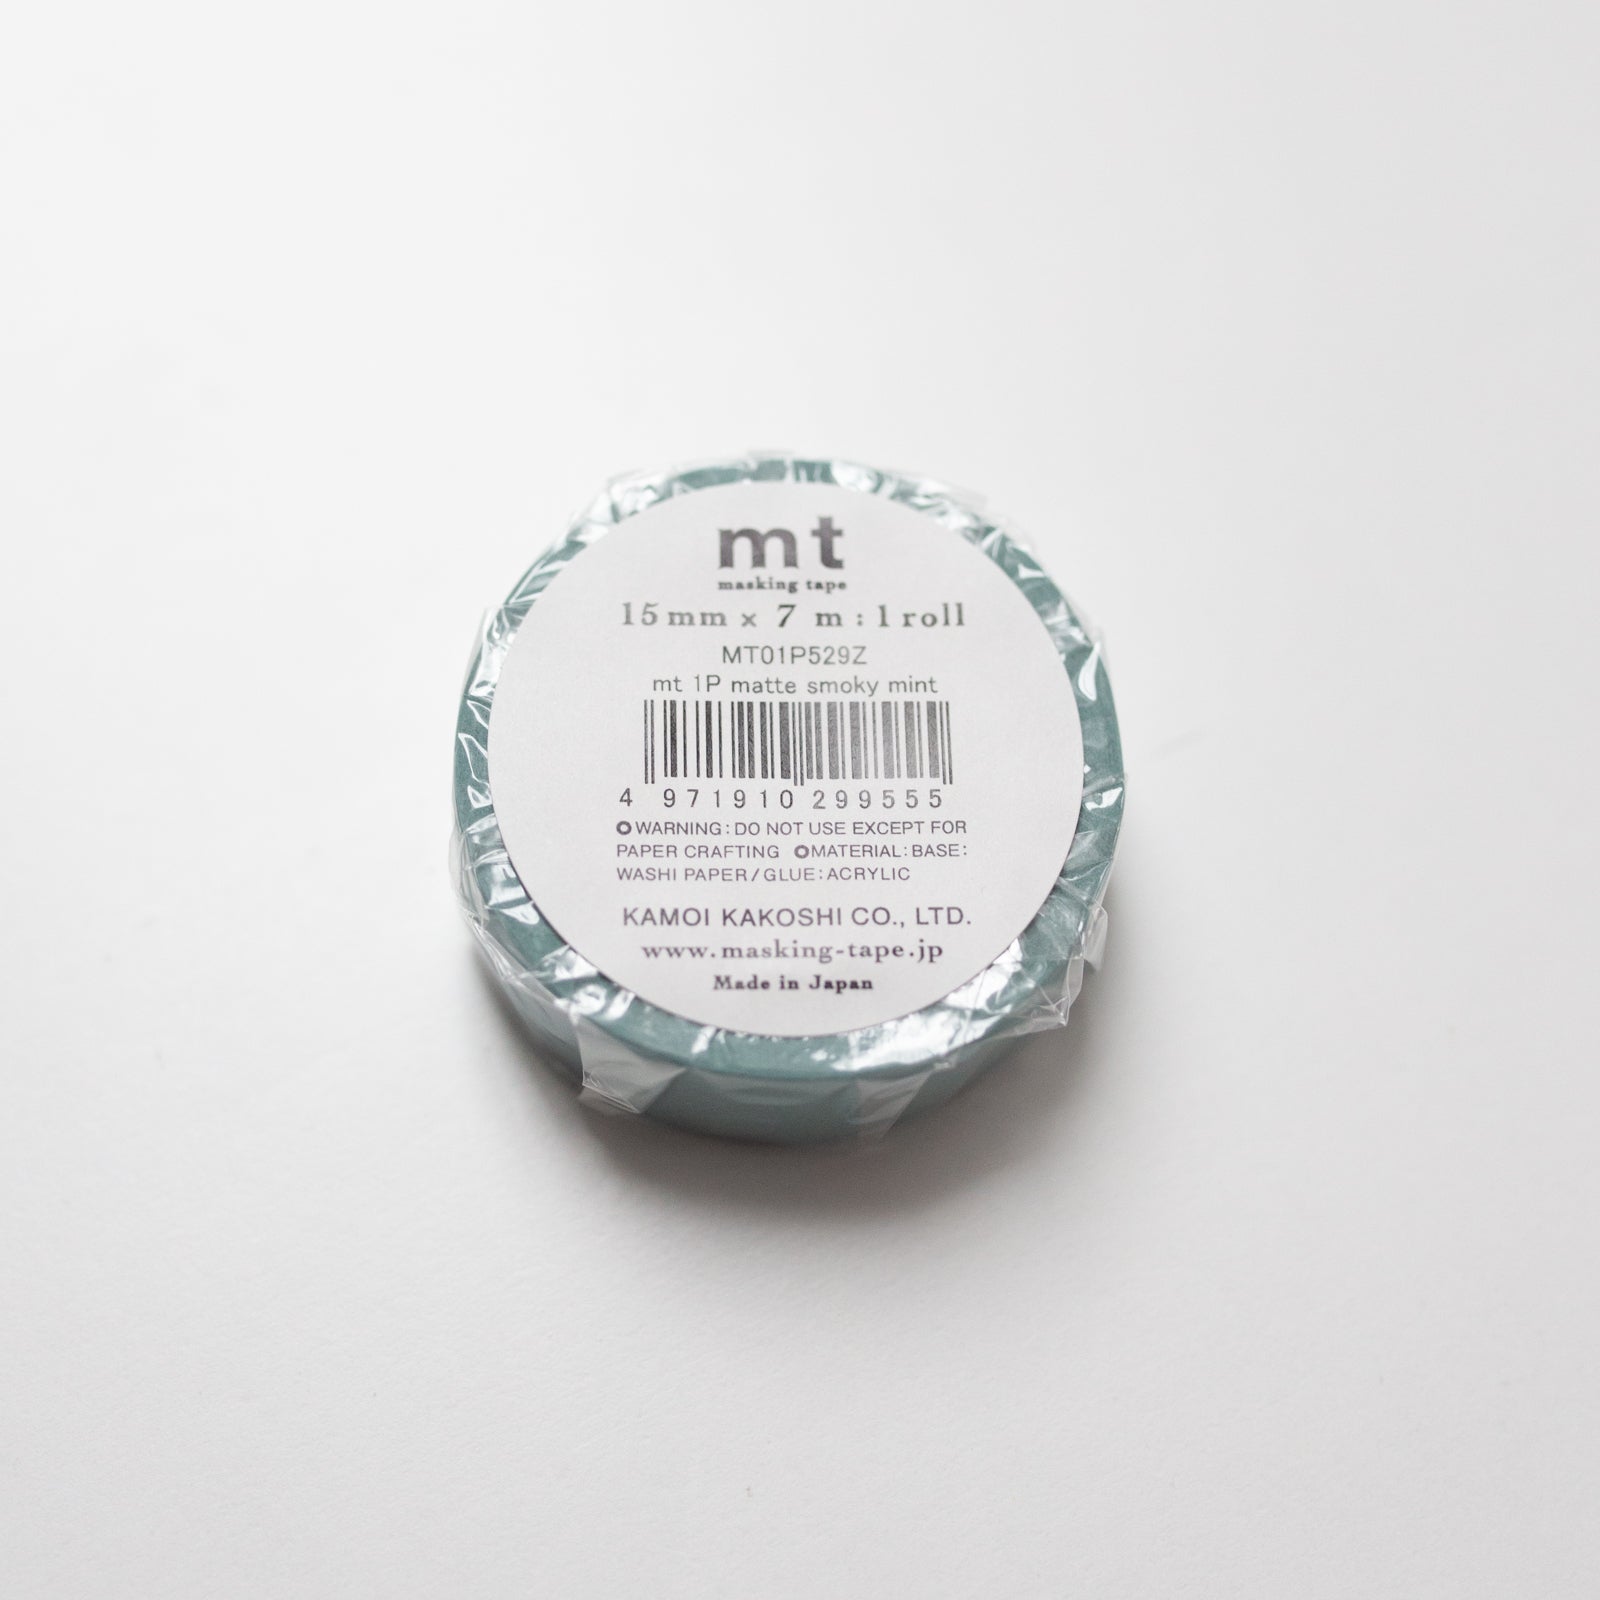 MT Masking tape Matte Smoky mint